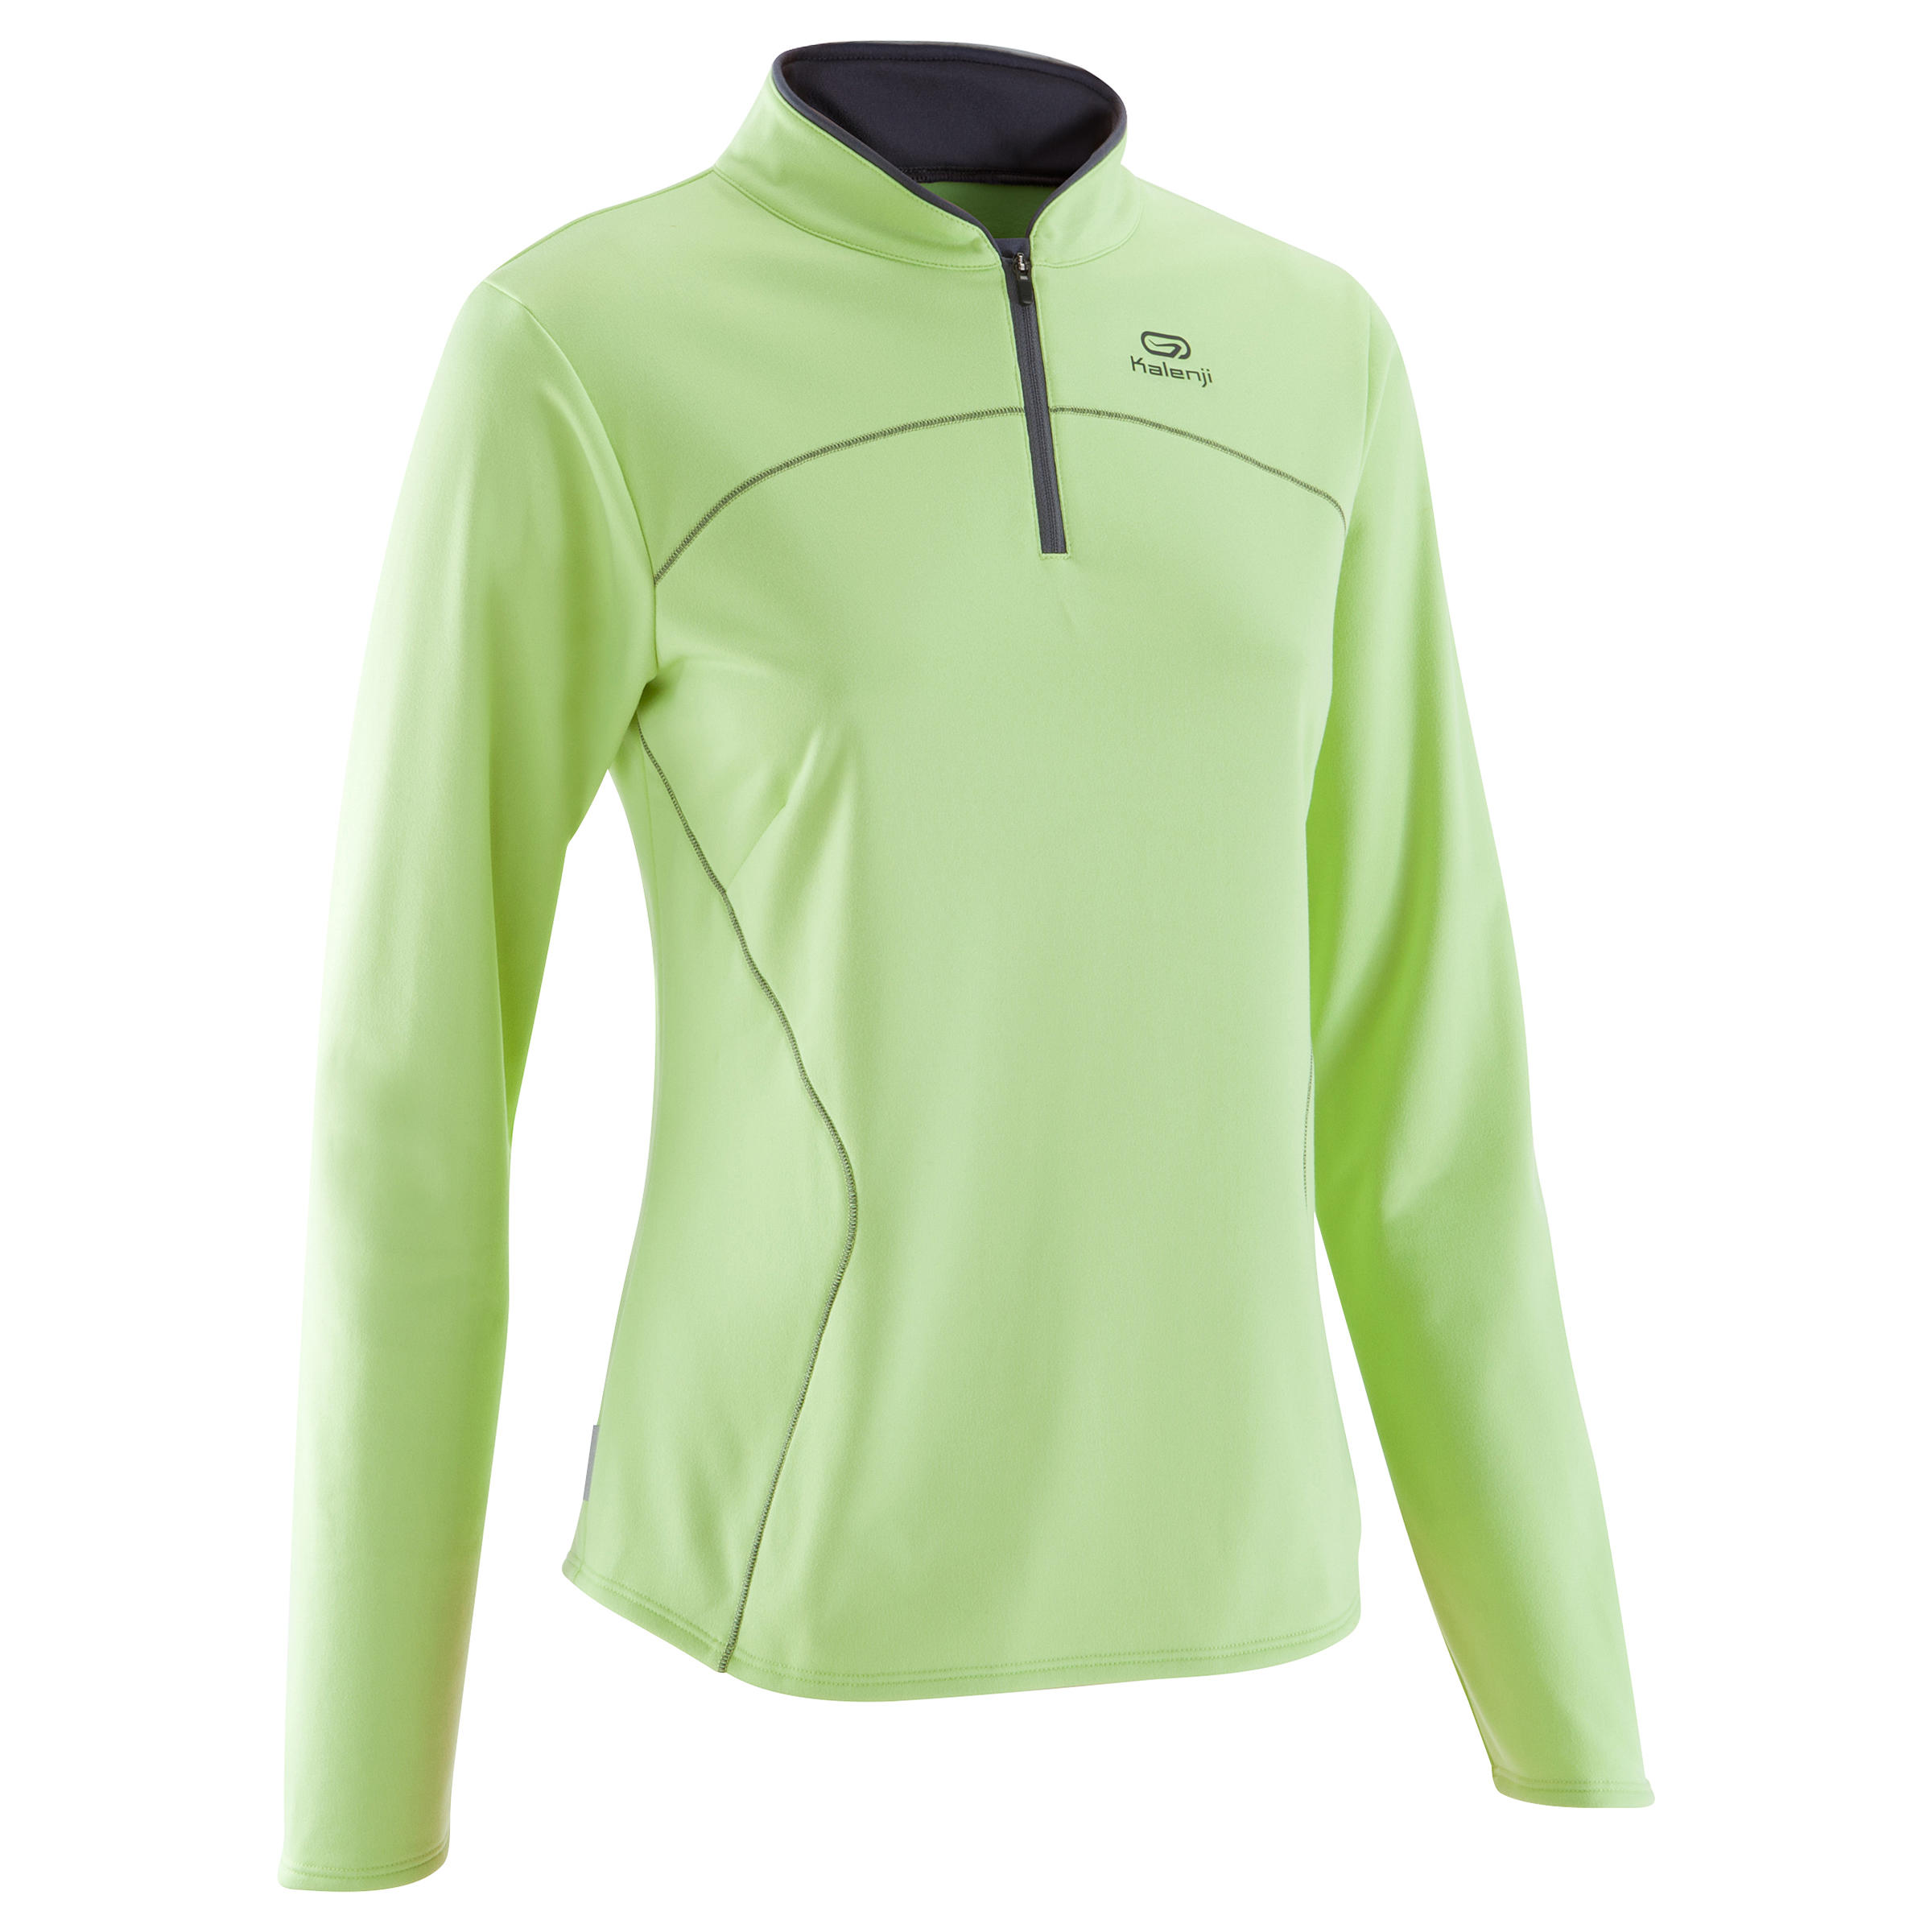 KALENJI Ekiden Women's Warm Long Sleeved Running Jersey - Green